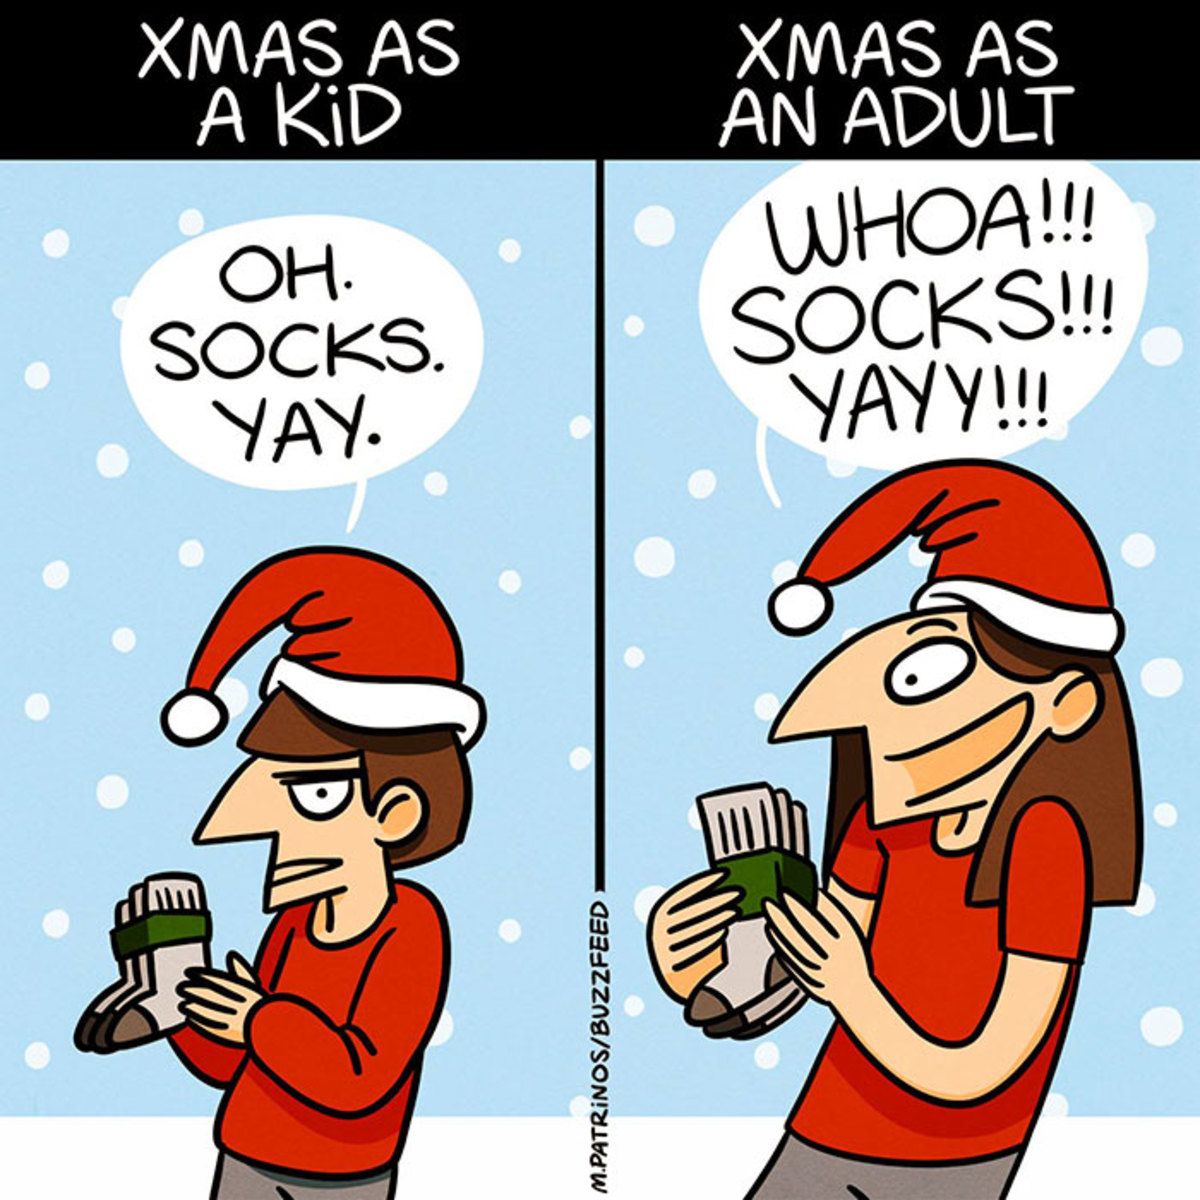 Christmas as a Kid vs Christmas as an Adult